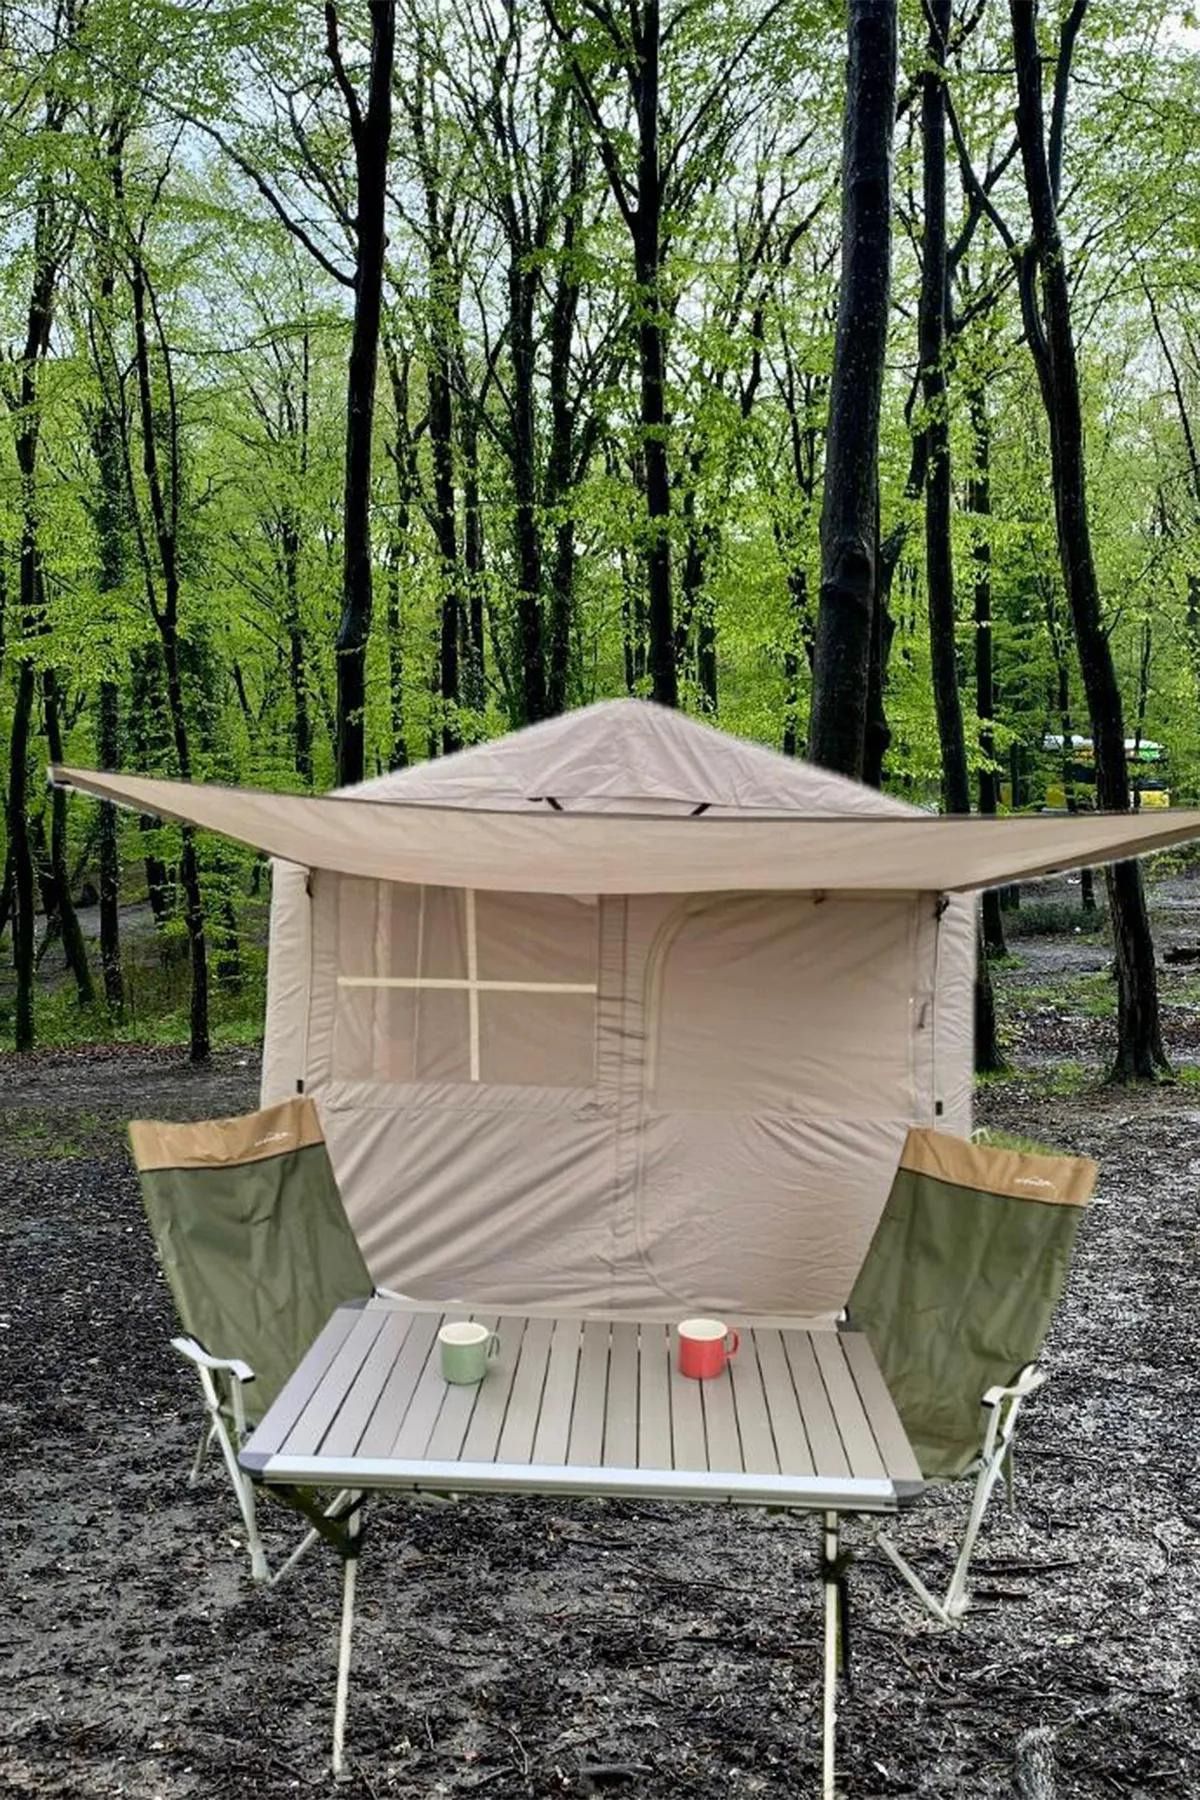 welcomein Campfit 5 Mevsim Şişme Kolay Kurulum Kamp Çadırı 250x250x200 Cm 4 Kişilik Şişme Çadır